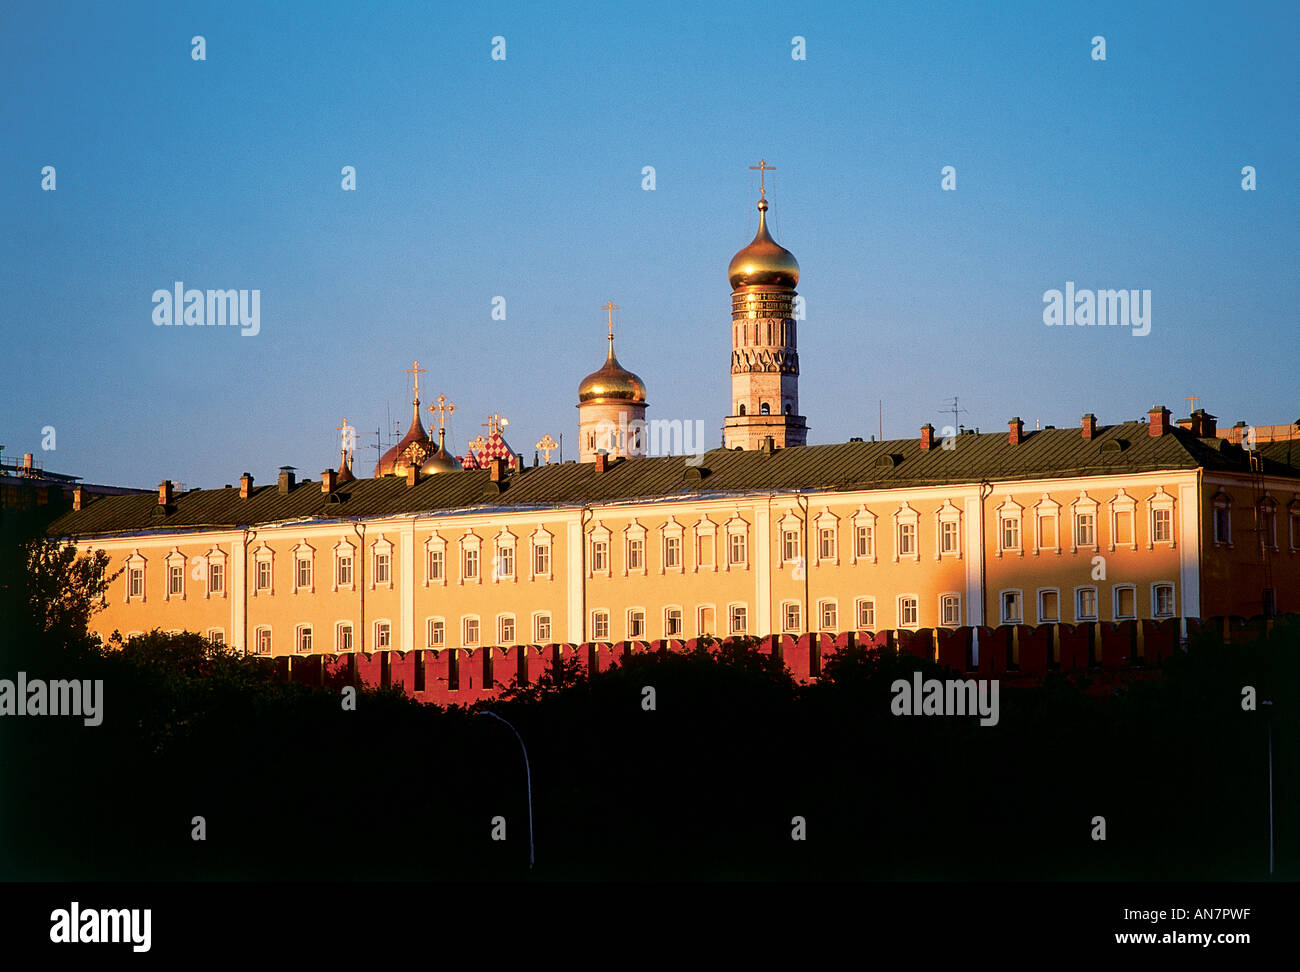 Vue de la rivière adjacente sun faible substitution, la façade du manège militaire commandé par Nicolas I en 1851 comme une extension pour le Grand Palais du Kremlin à Moscou Banque D'Images